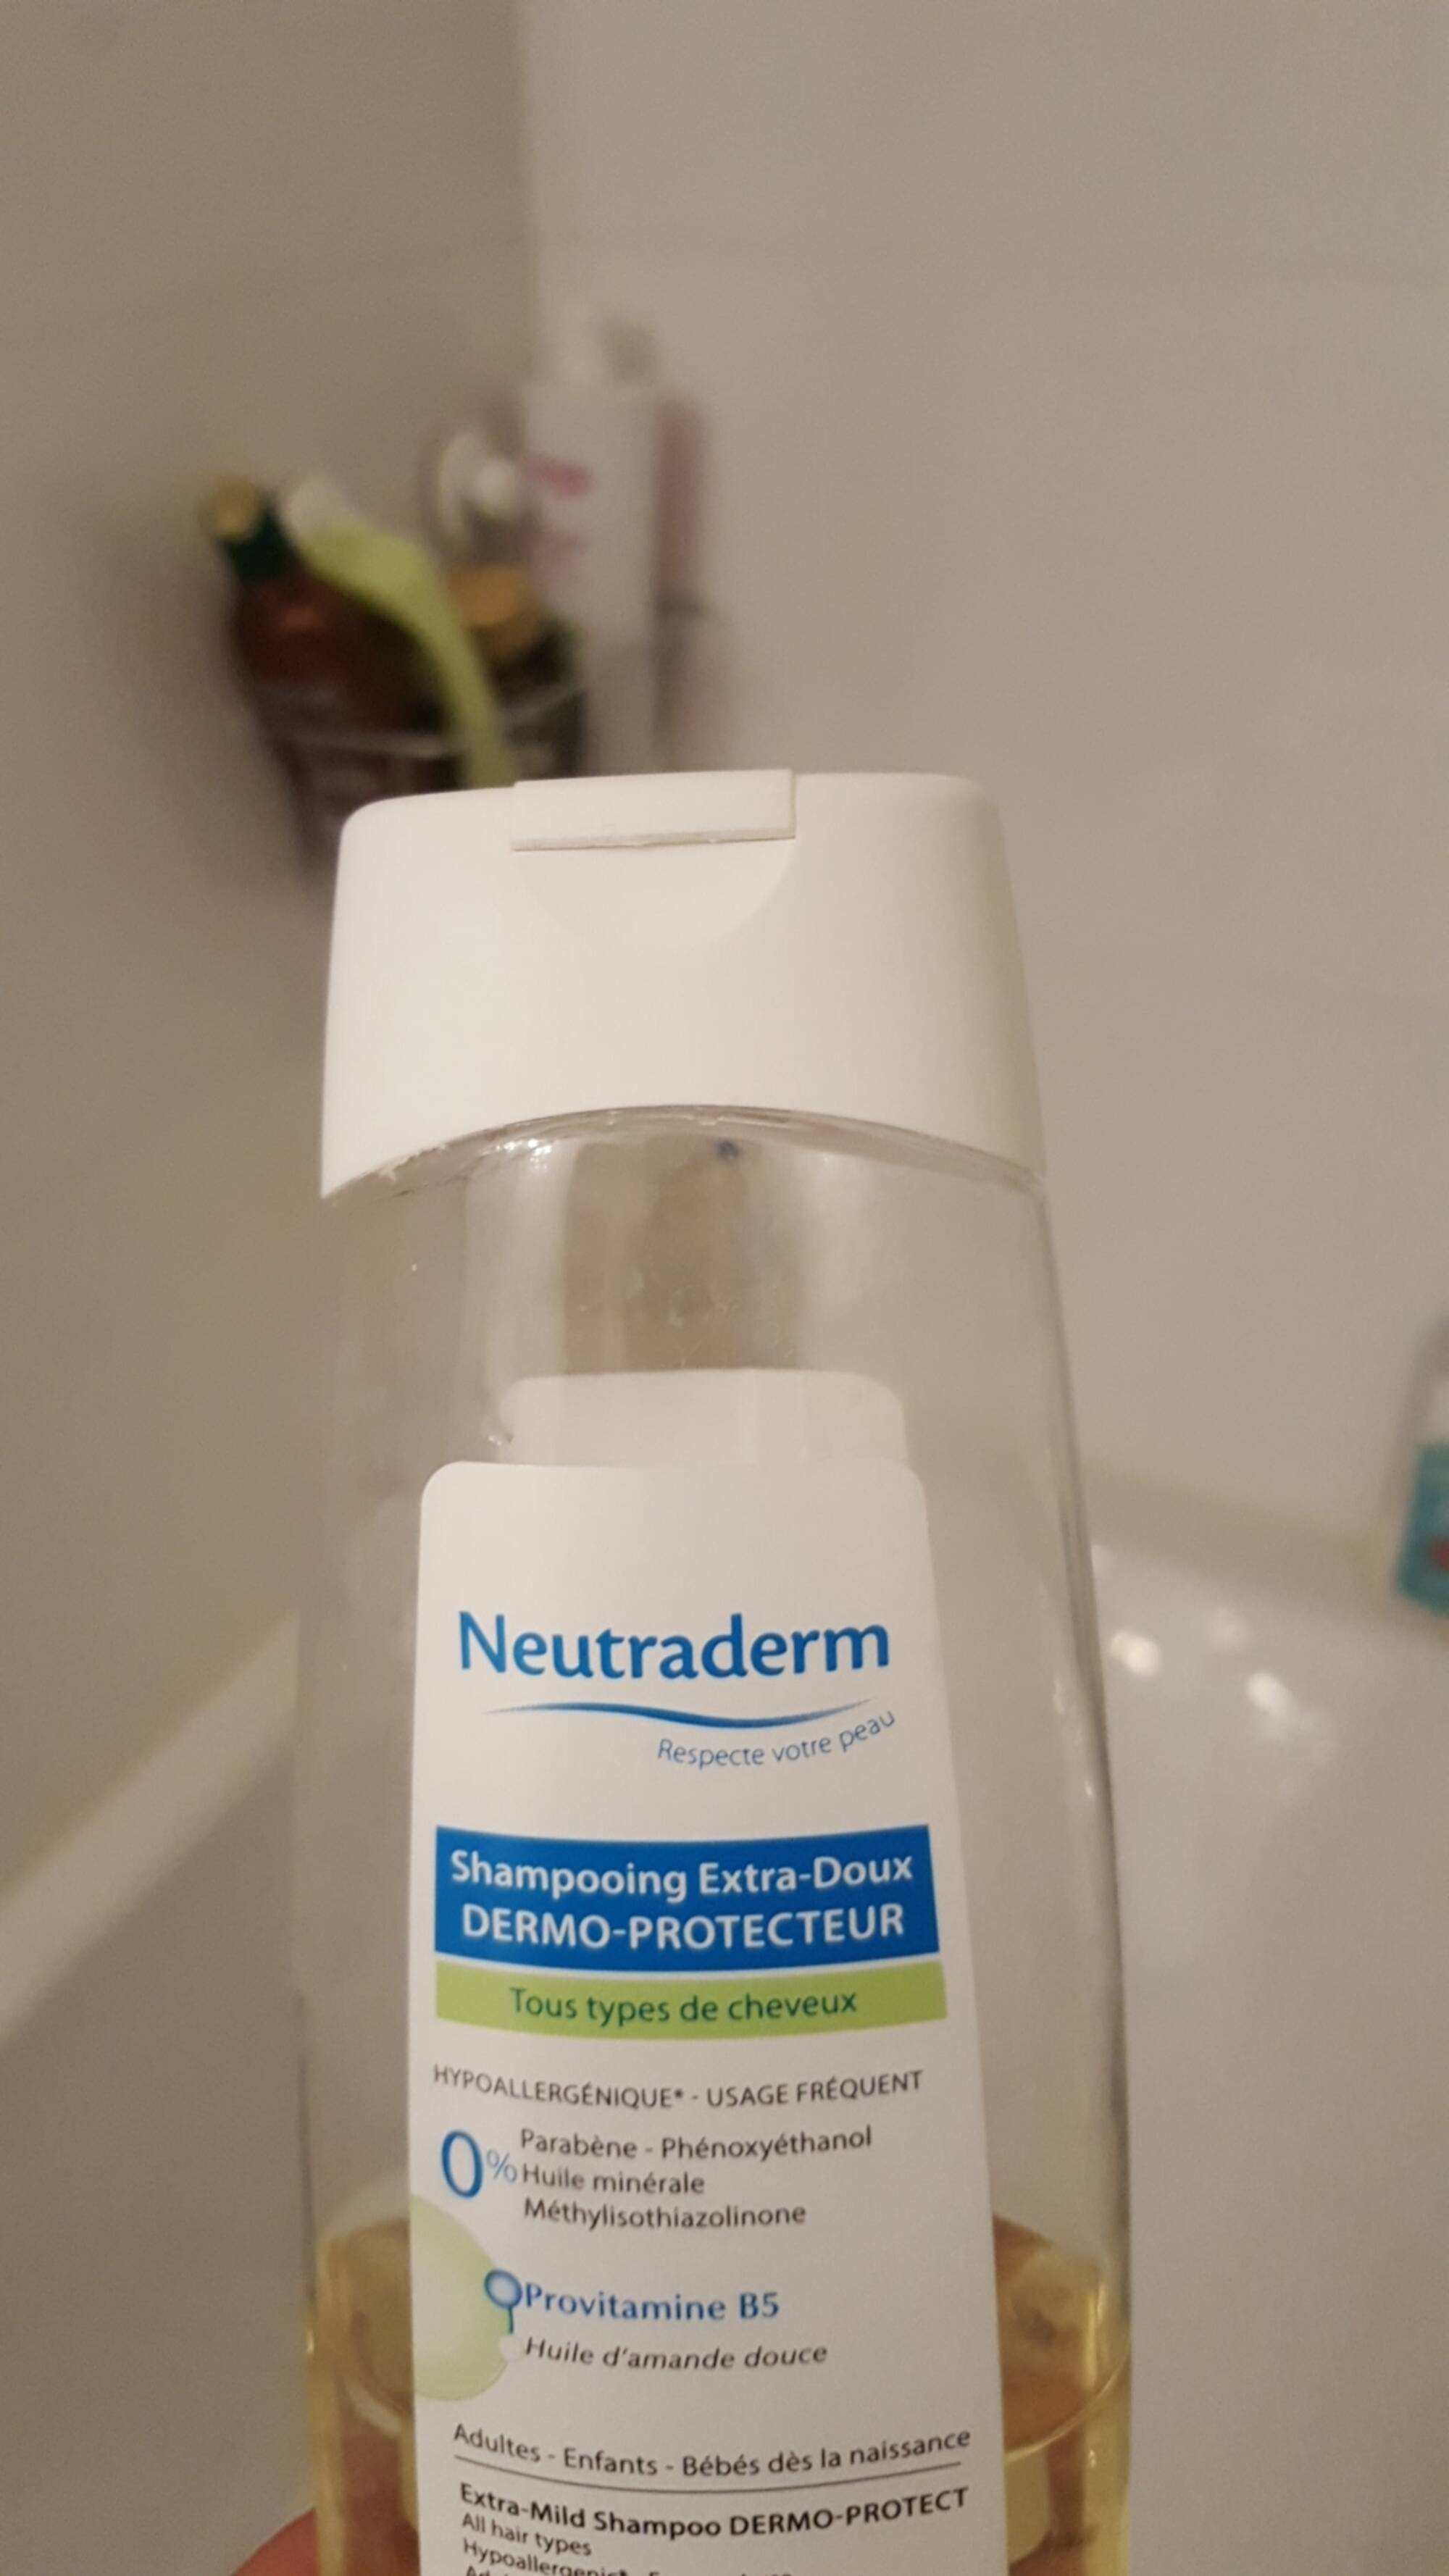 NEUTRADERM - Dermo-protecteur - Shampooing extra-doux